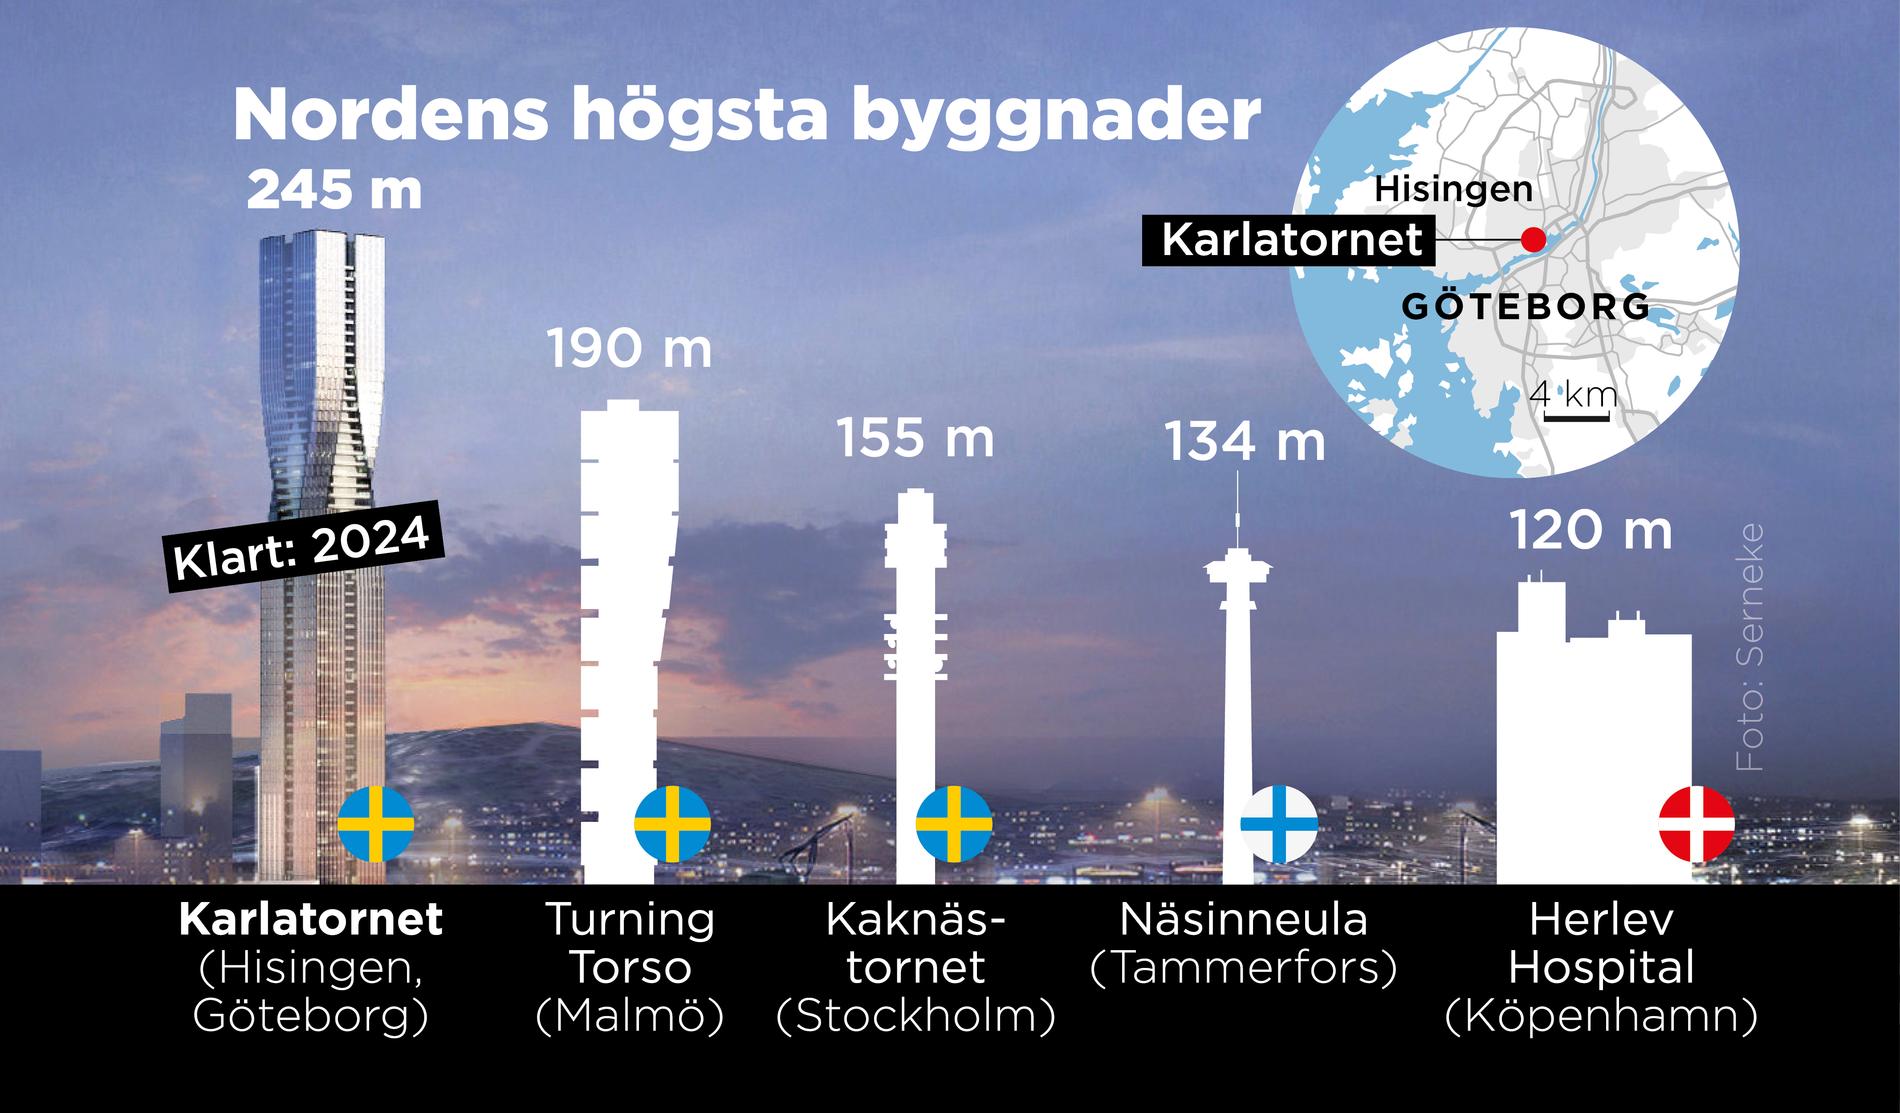 Karlatornet kommer att bli Nordens högsta byggnad när det står klart 2024. Men än så länge är det bara halvfärdigt.